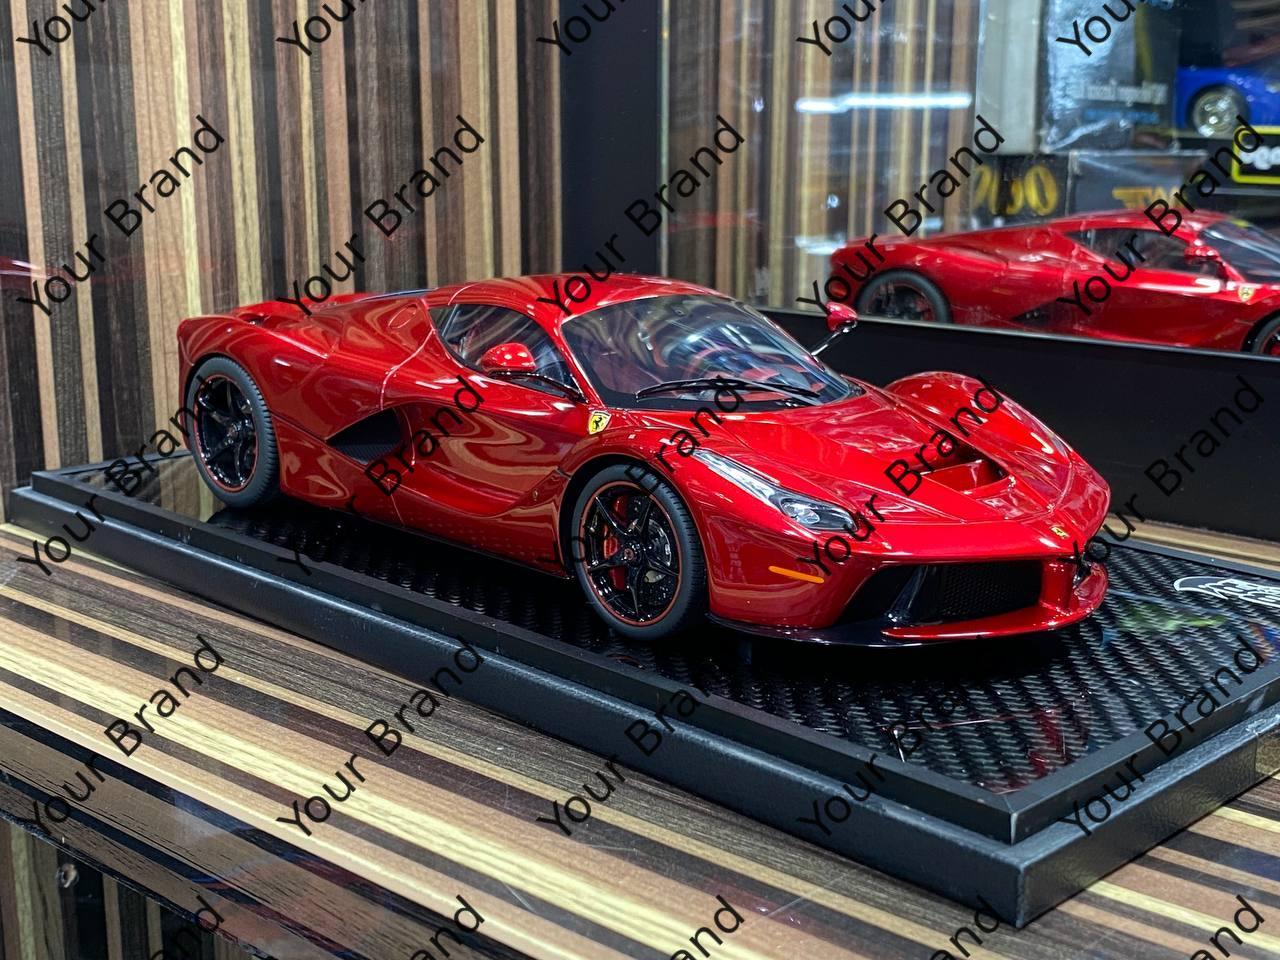 1/18 Diecast Ferrari LaFerrari Rosso Corsa BBR Scale Model Car